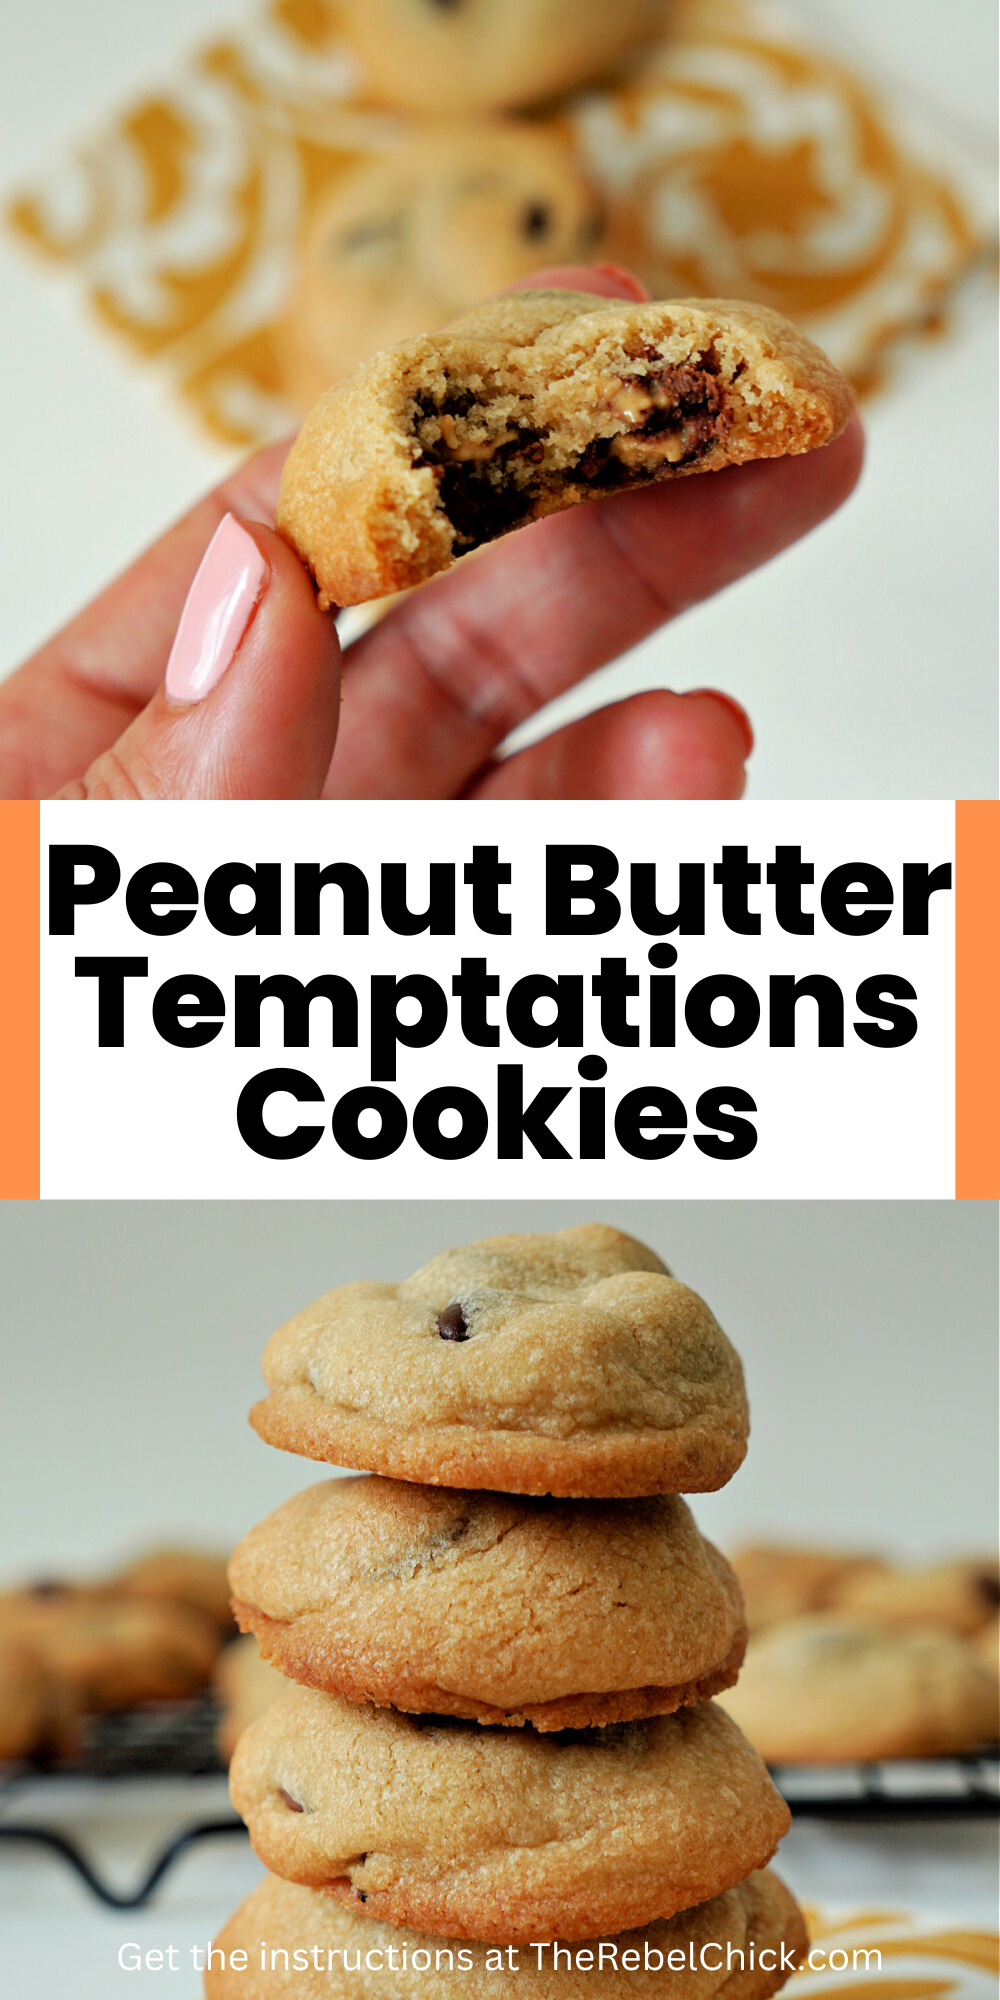 Peanut Butter Temptations